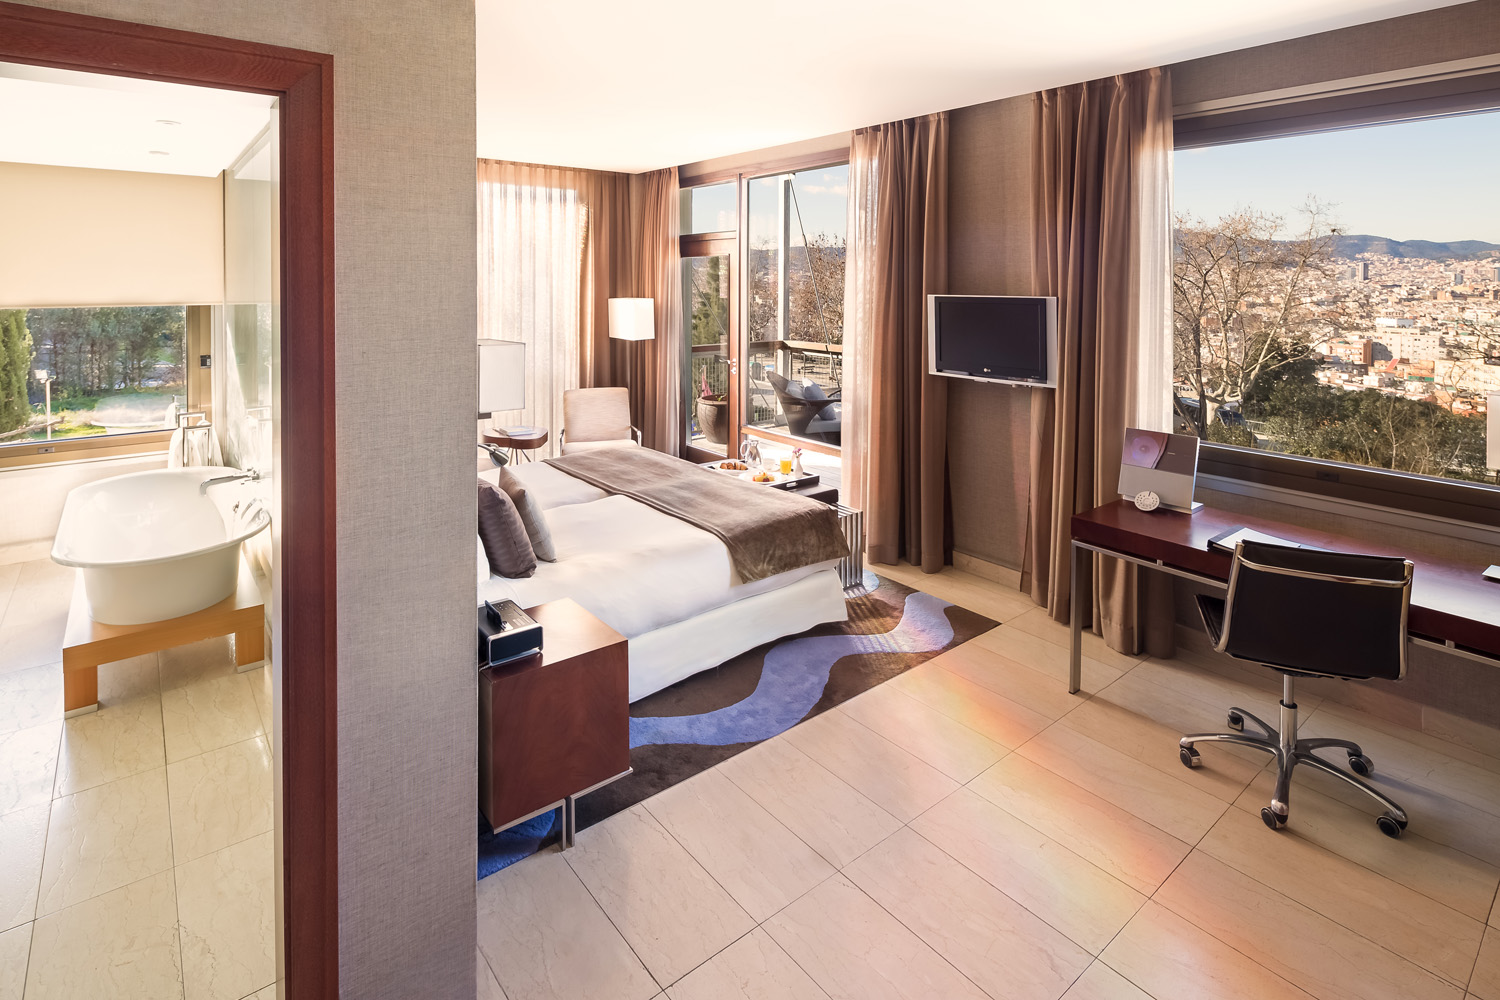 Rooms: Premium with terrace